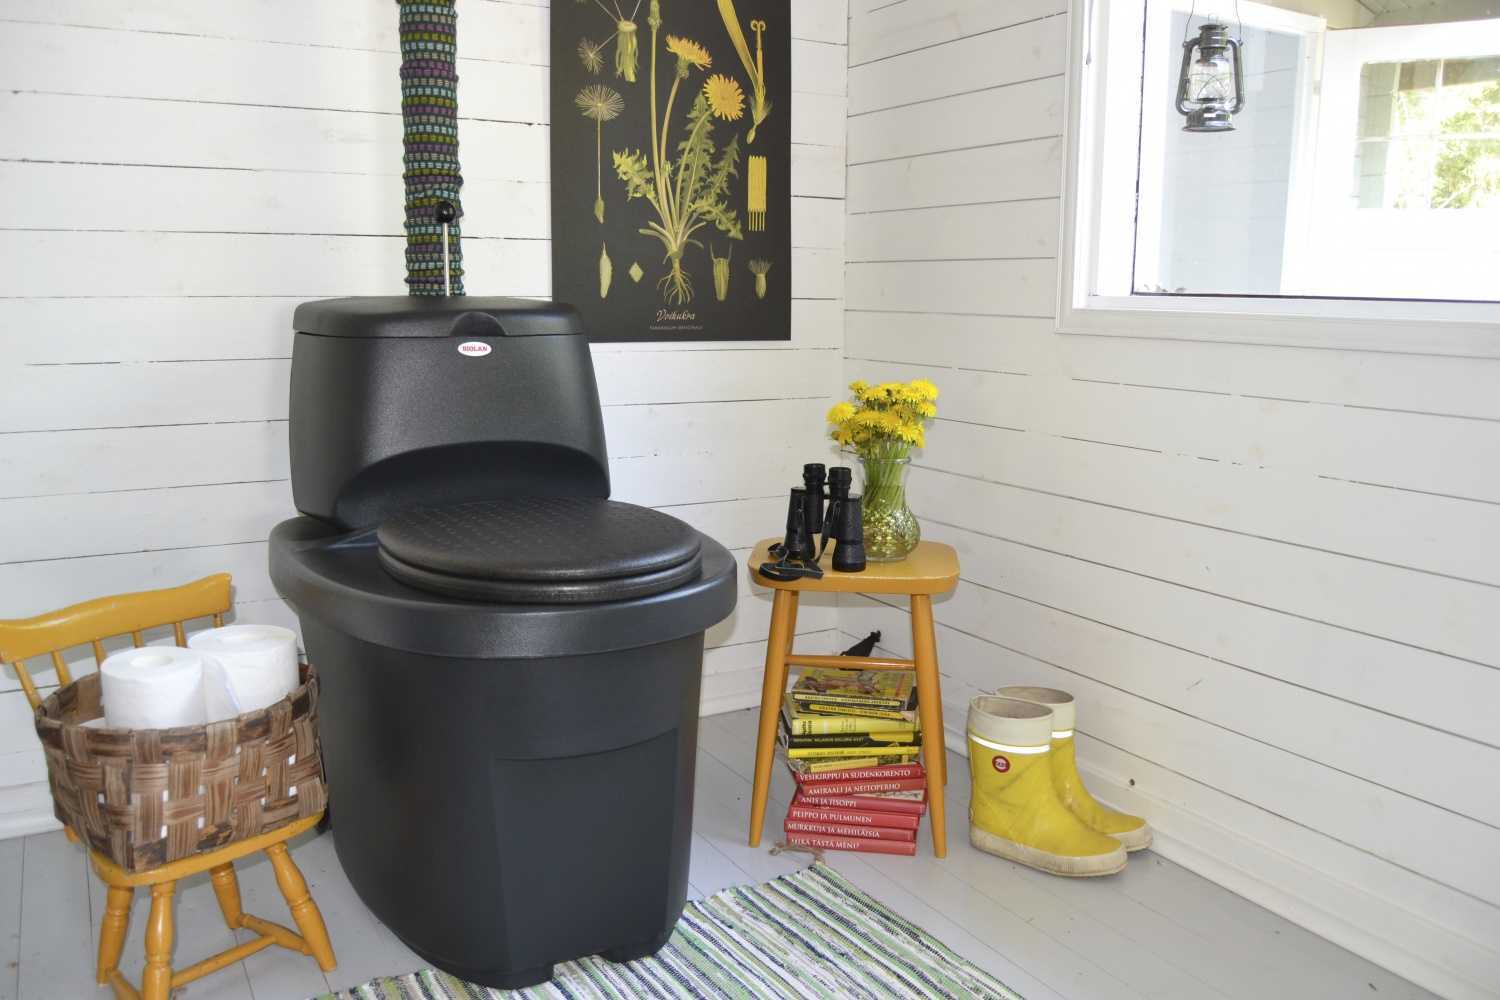 Любители загородного отдыха знают, насколько удобен и практичен торфяной туалет для дачи, который позволяет решить актуальные проблемы и ограждает от неприятного запаха